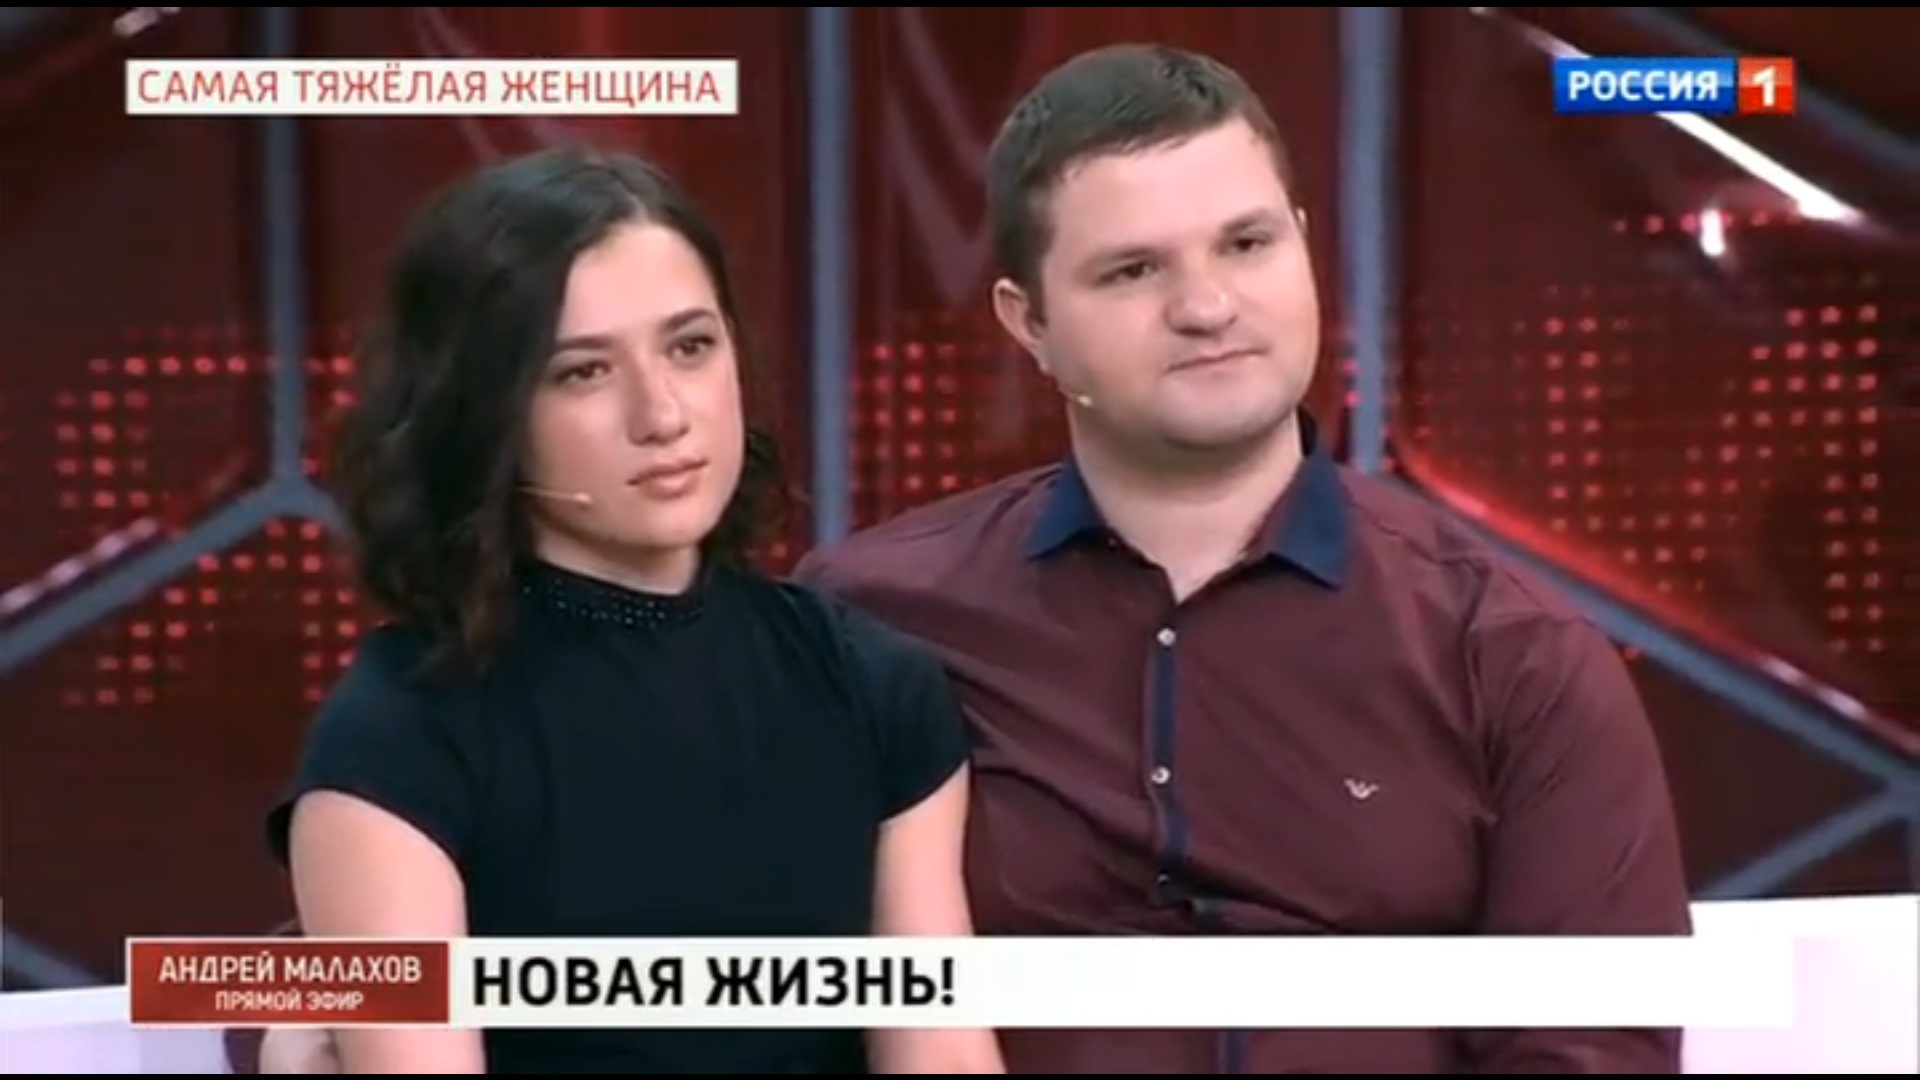 Алексей Нурдинов после того, как маму положили в больницу, затеял ремонт в доме, пошел в спортзал и познакомился с девушкой